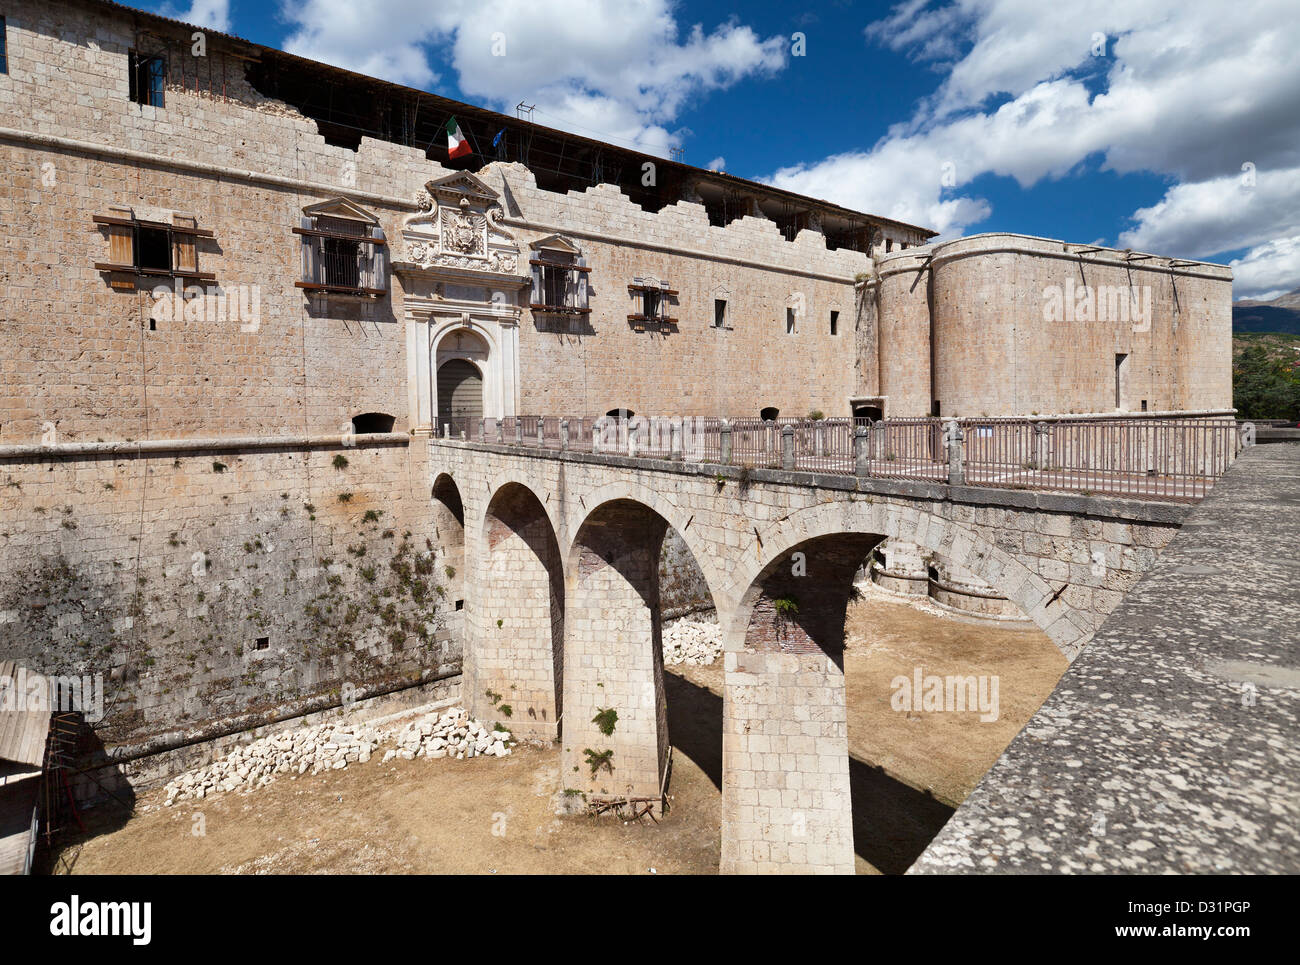 L'Aquila castello del periodo rinascimentale nella regione italiana Abruzzo Foto Stock